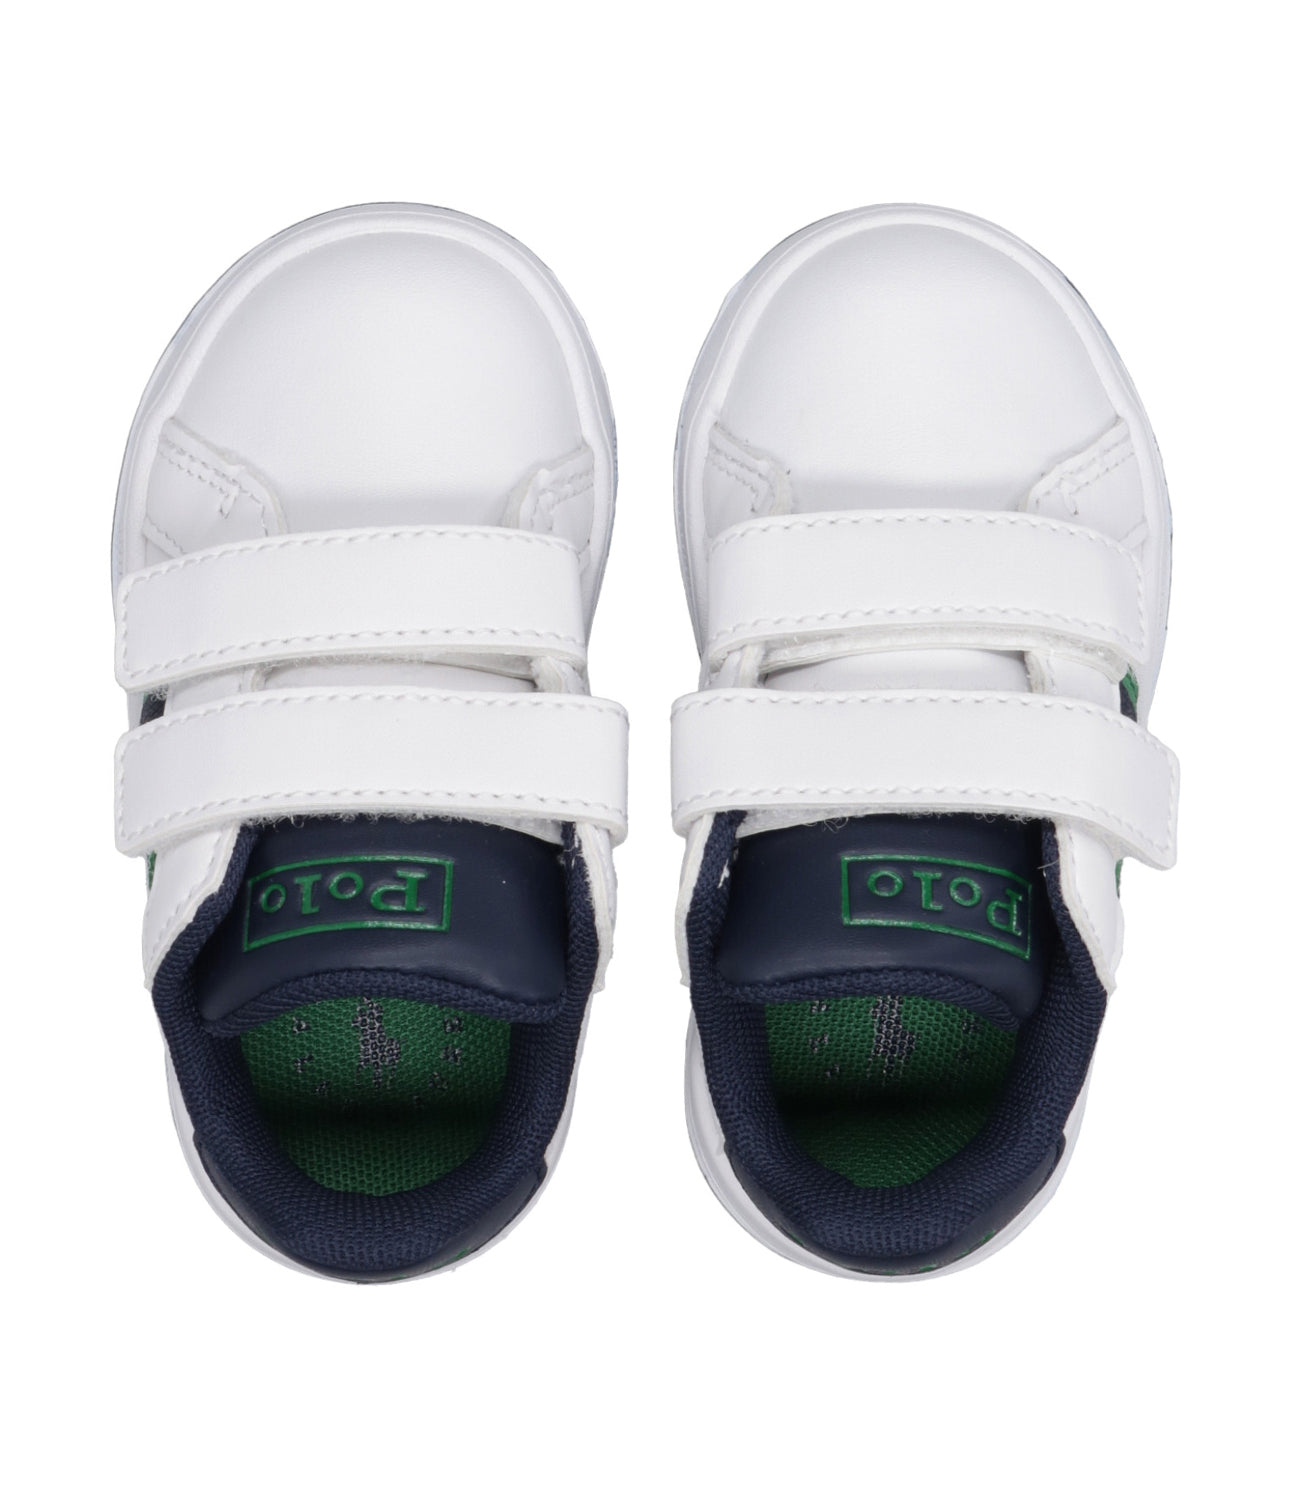 Ralph Lauren Childrenswear | Sneakers Heritage Court II Bear EZ Bianco e Verde